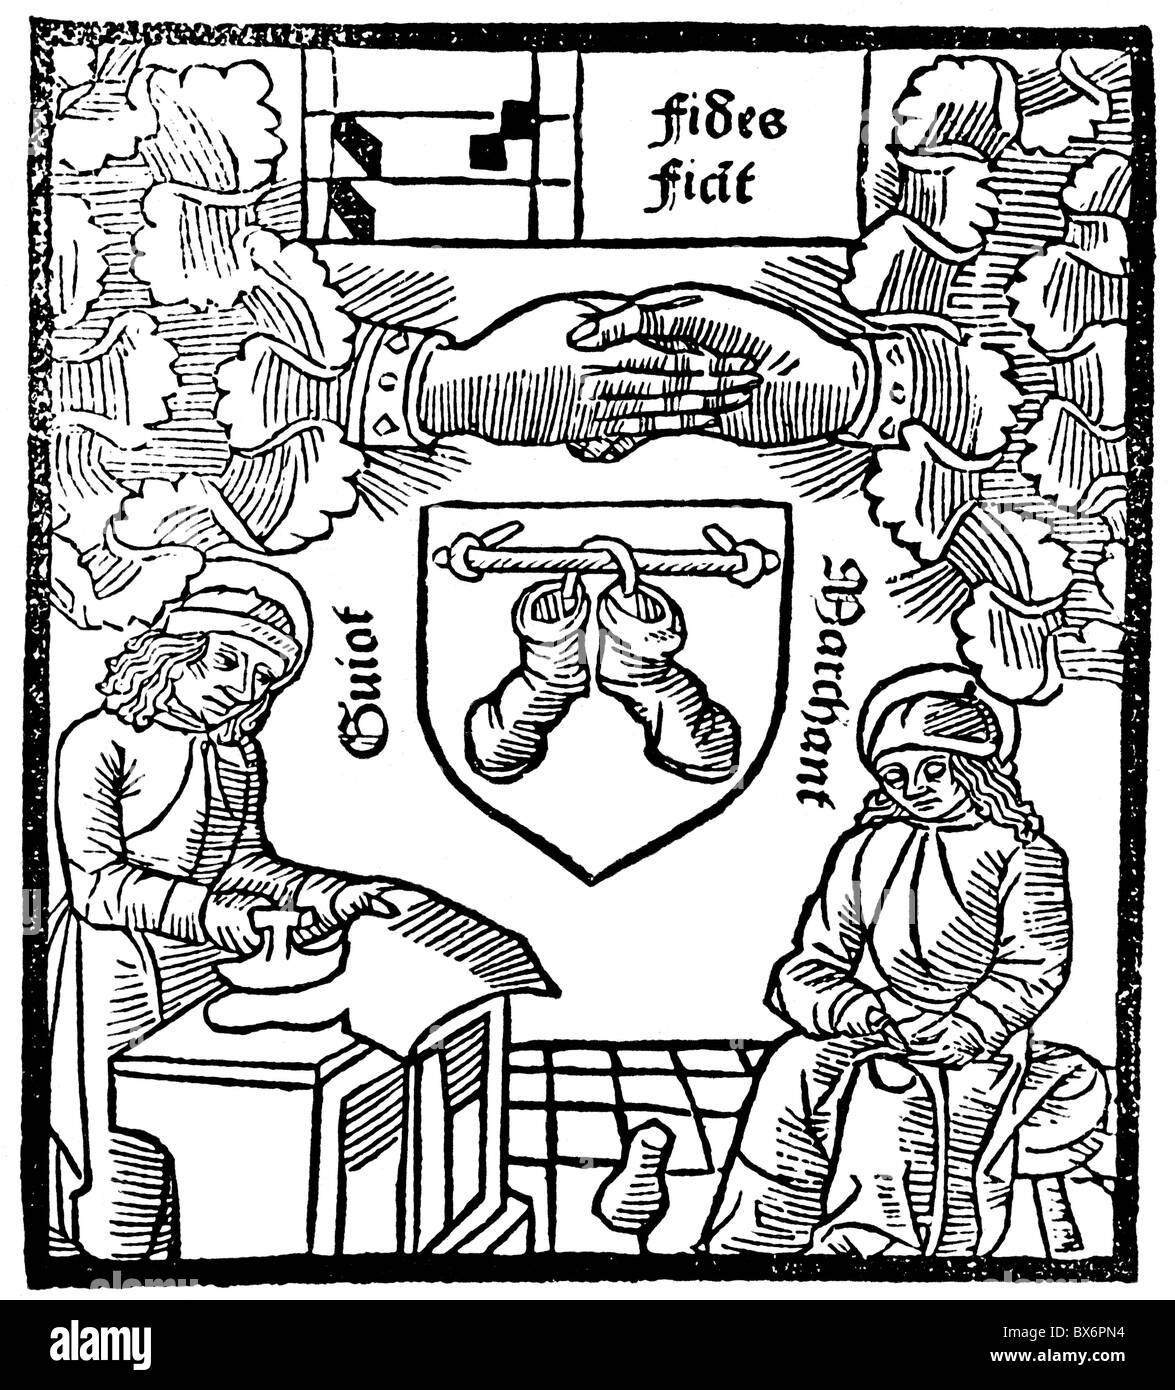 Artigianato, gilde, segno di gilda dei calzolai, taglio di legno, Faustus Andrelinus, Parigi, 1494, diritti aggiuntivi-clearences-non disponibile Foto Stock